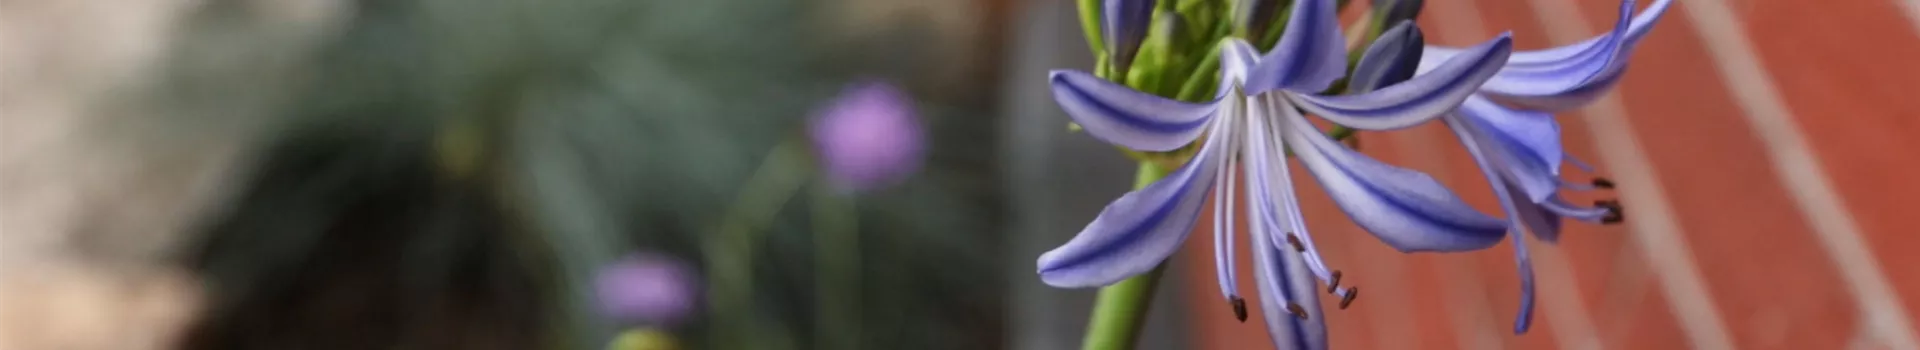 Afrikanische Schmucklilie - Einpflanzen im Garten